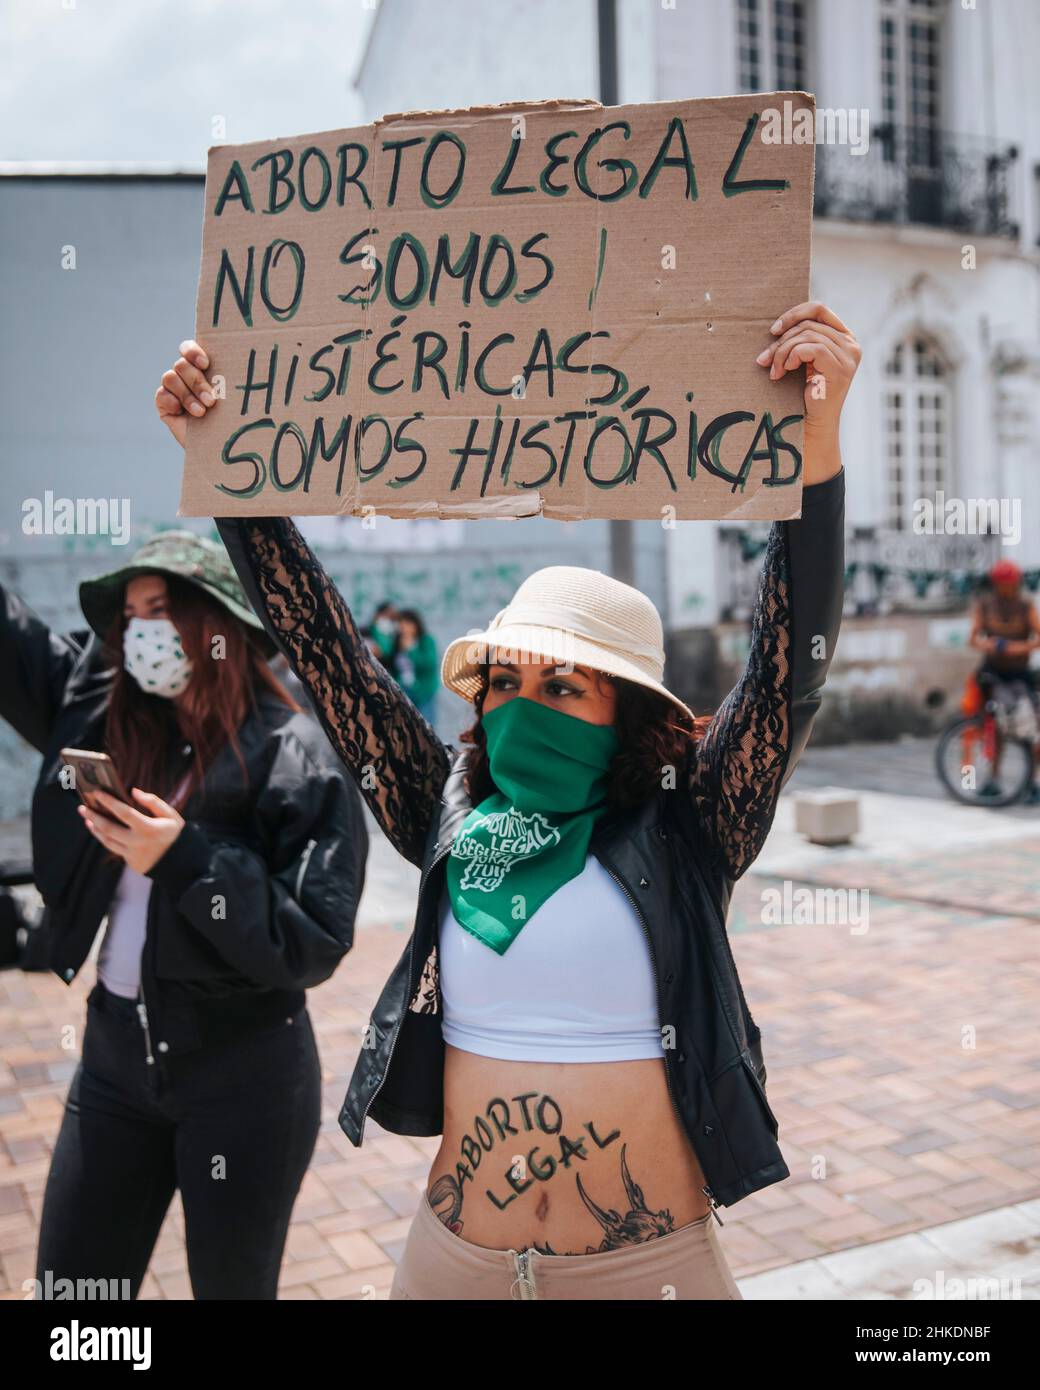 Manifestation pro avortement, Équateur Banque D'Images